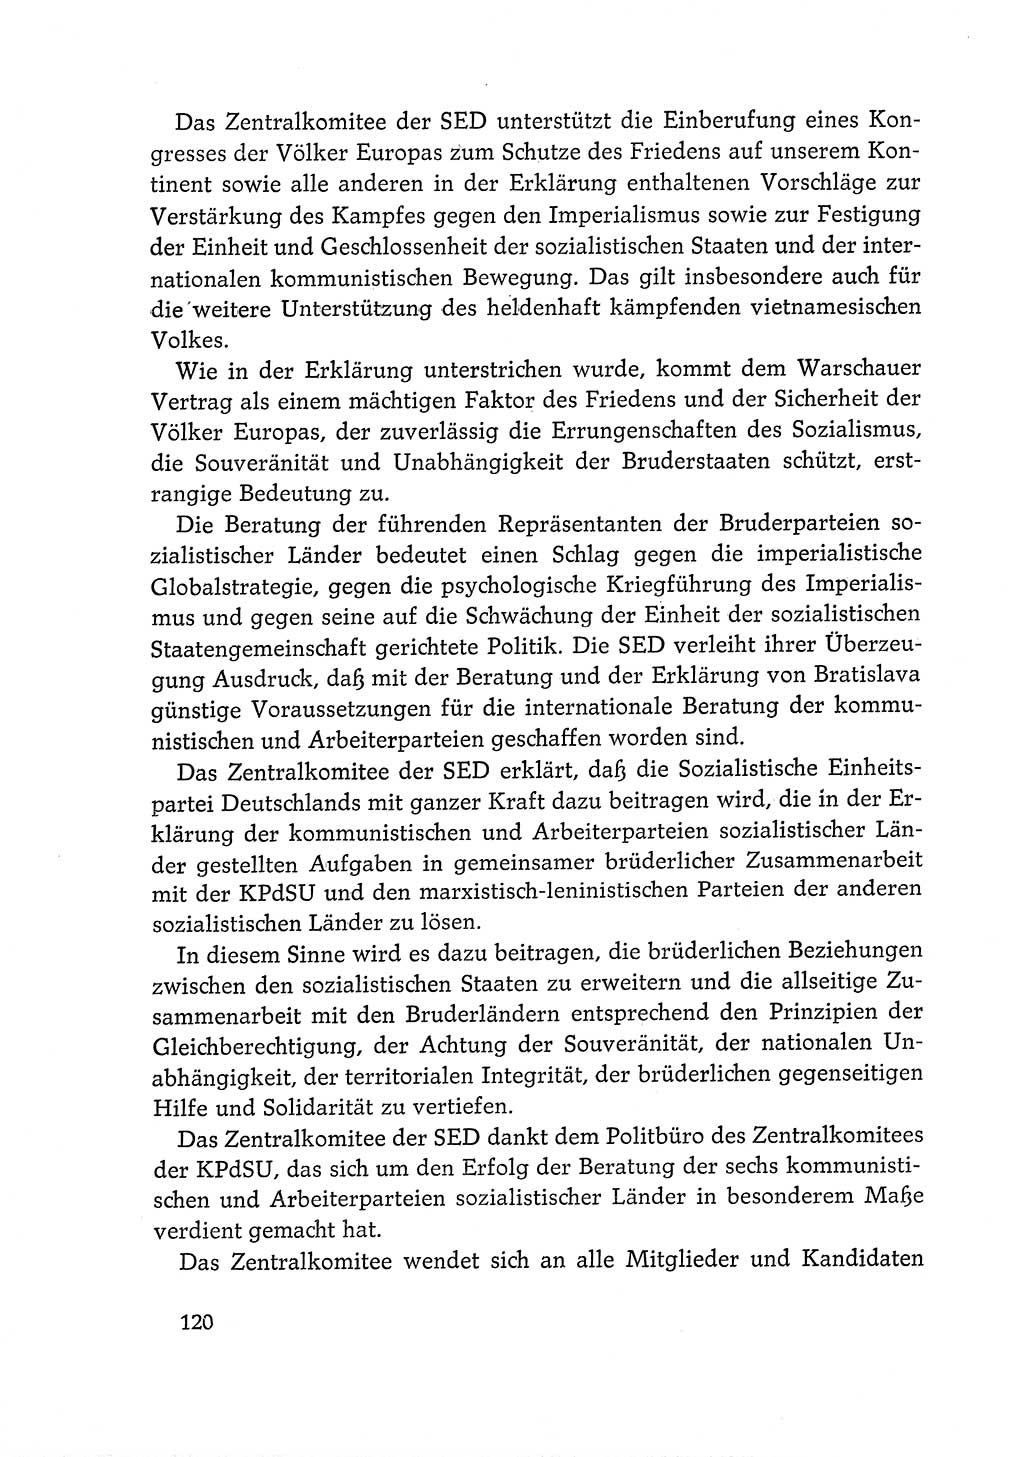 Dokumente der Sozialistischen Einheitspartei Deutschlands (SED) [Deutsche Demokratische Republik (DDR)] 1968-1969, Seite 120 (Dok. SED DDR 1968-1969, S. 120)